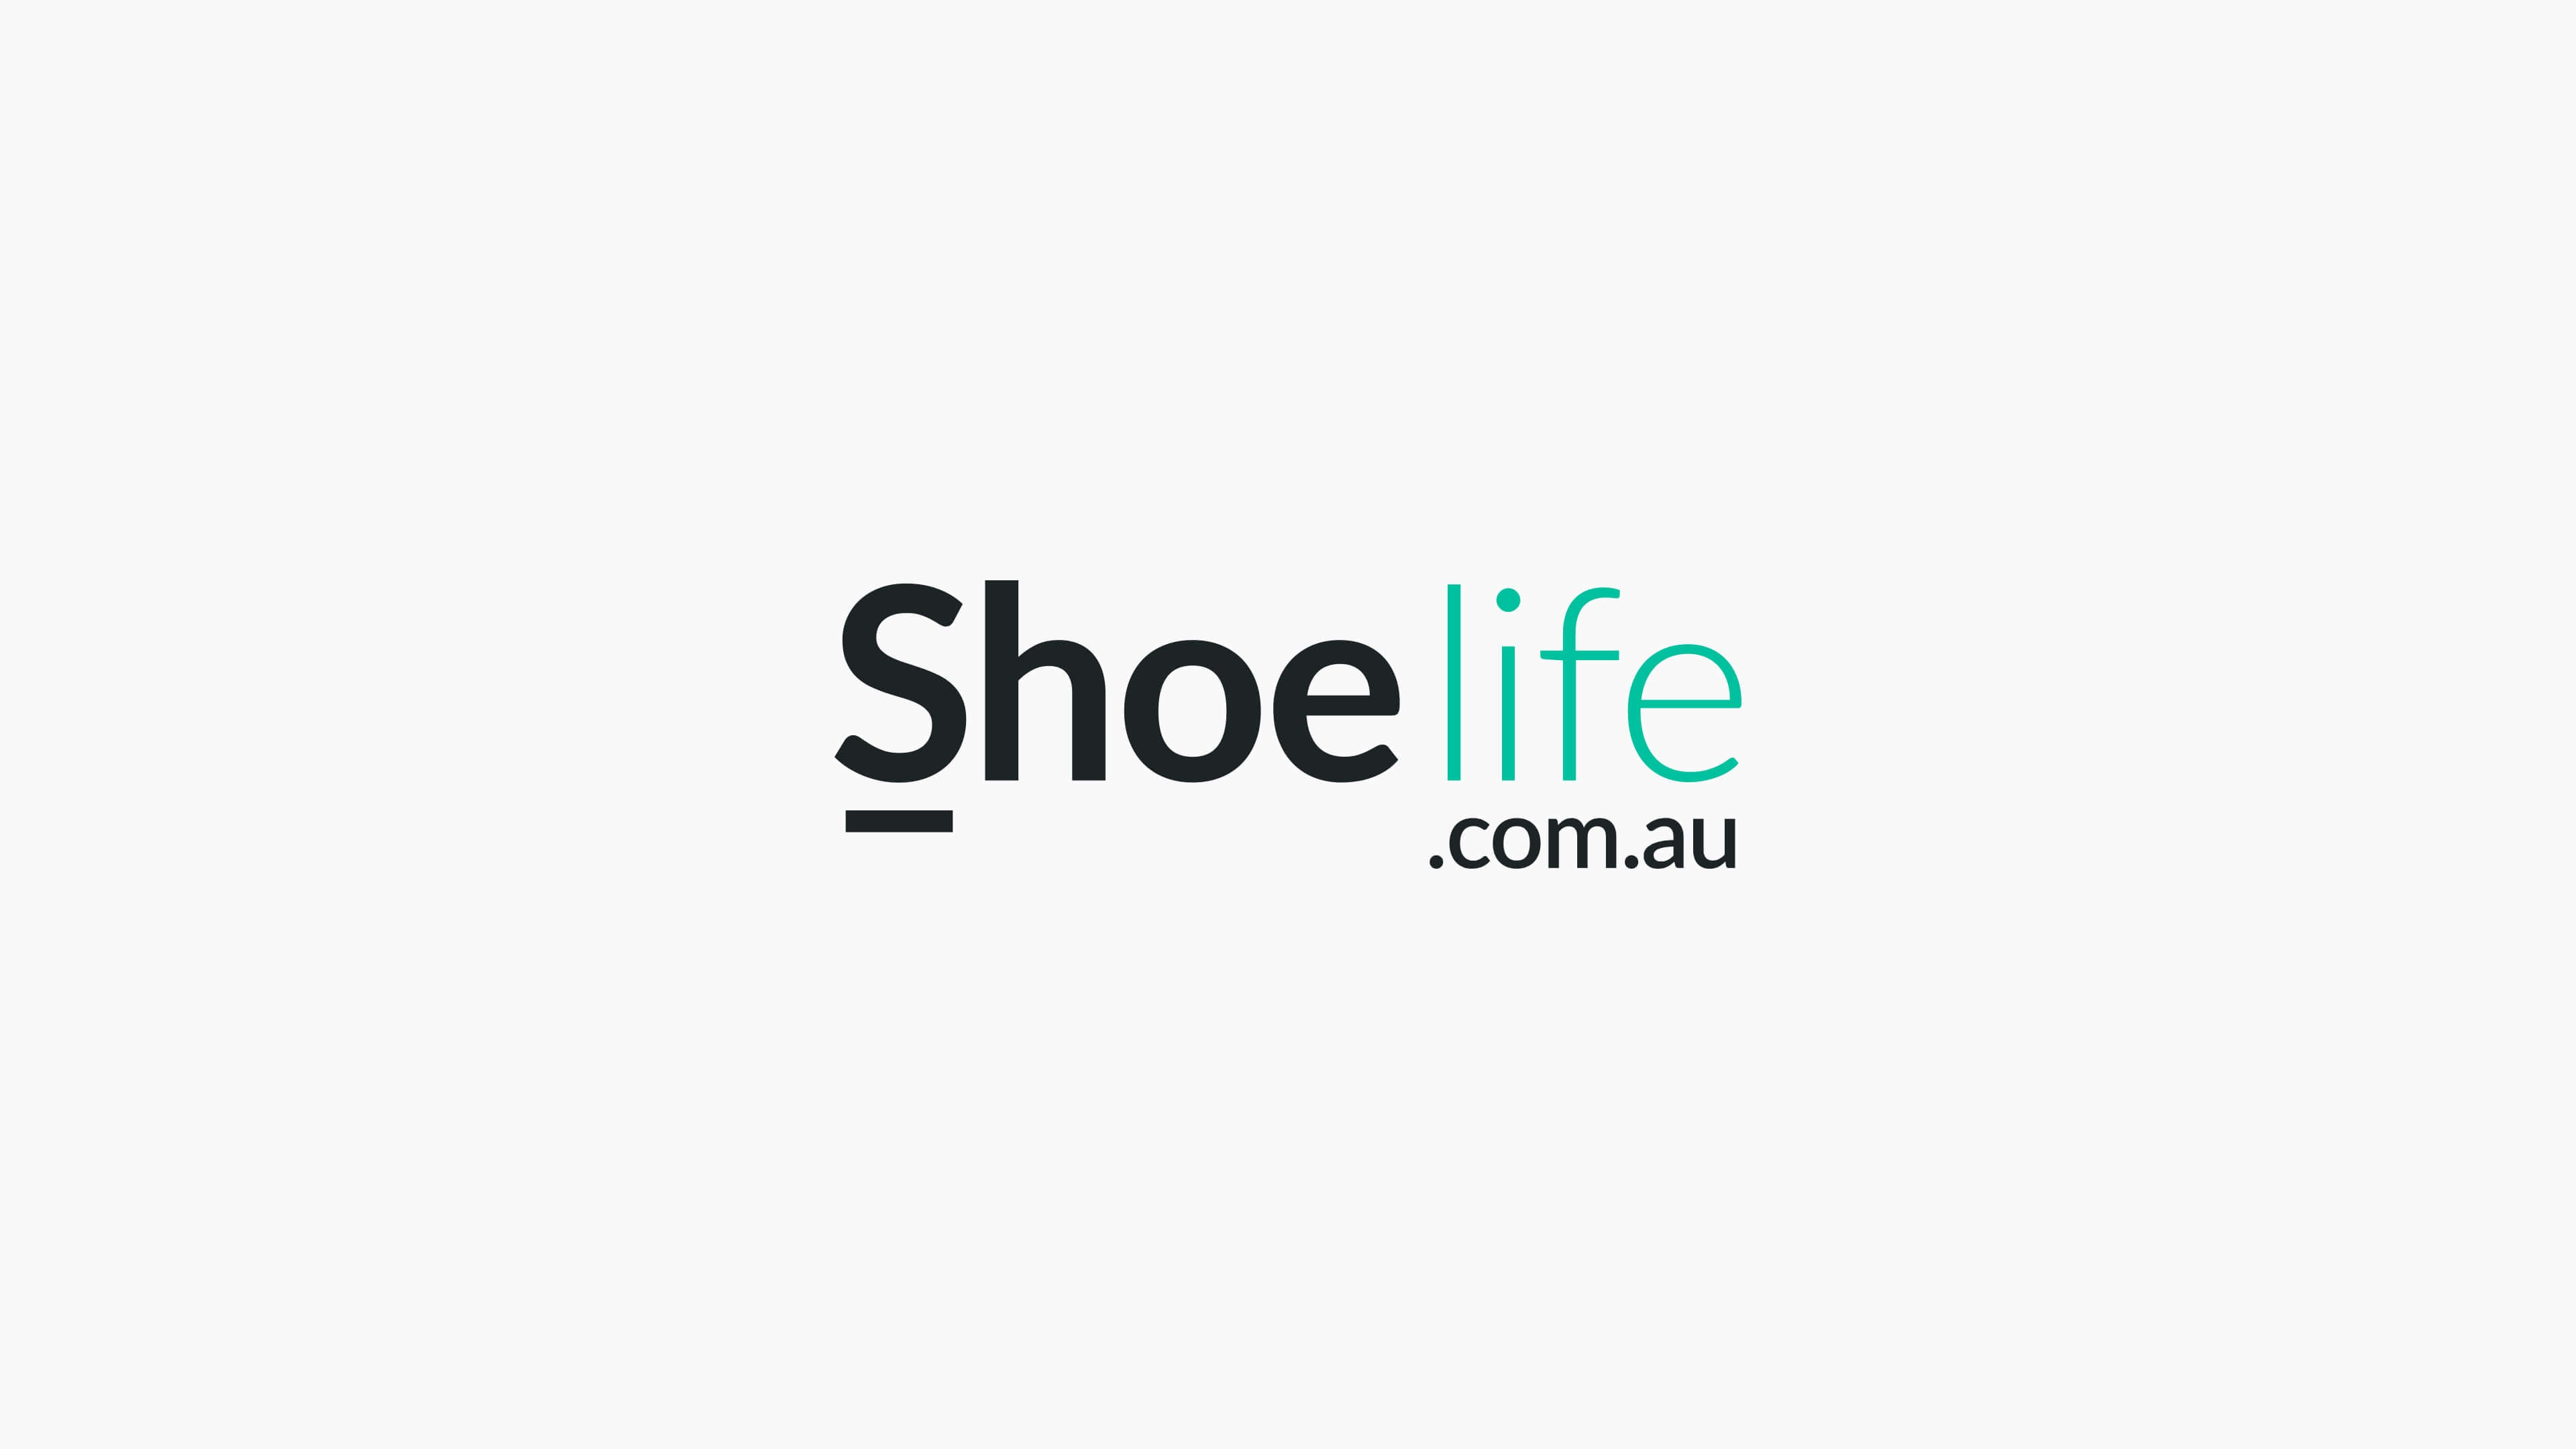 ShoeLife